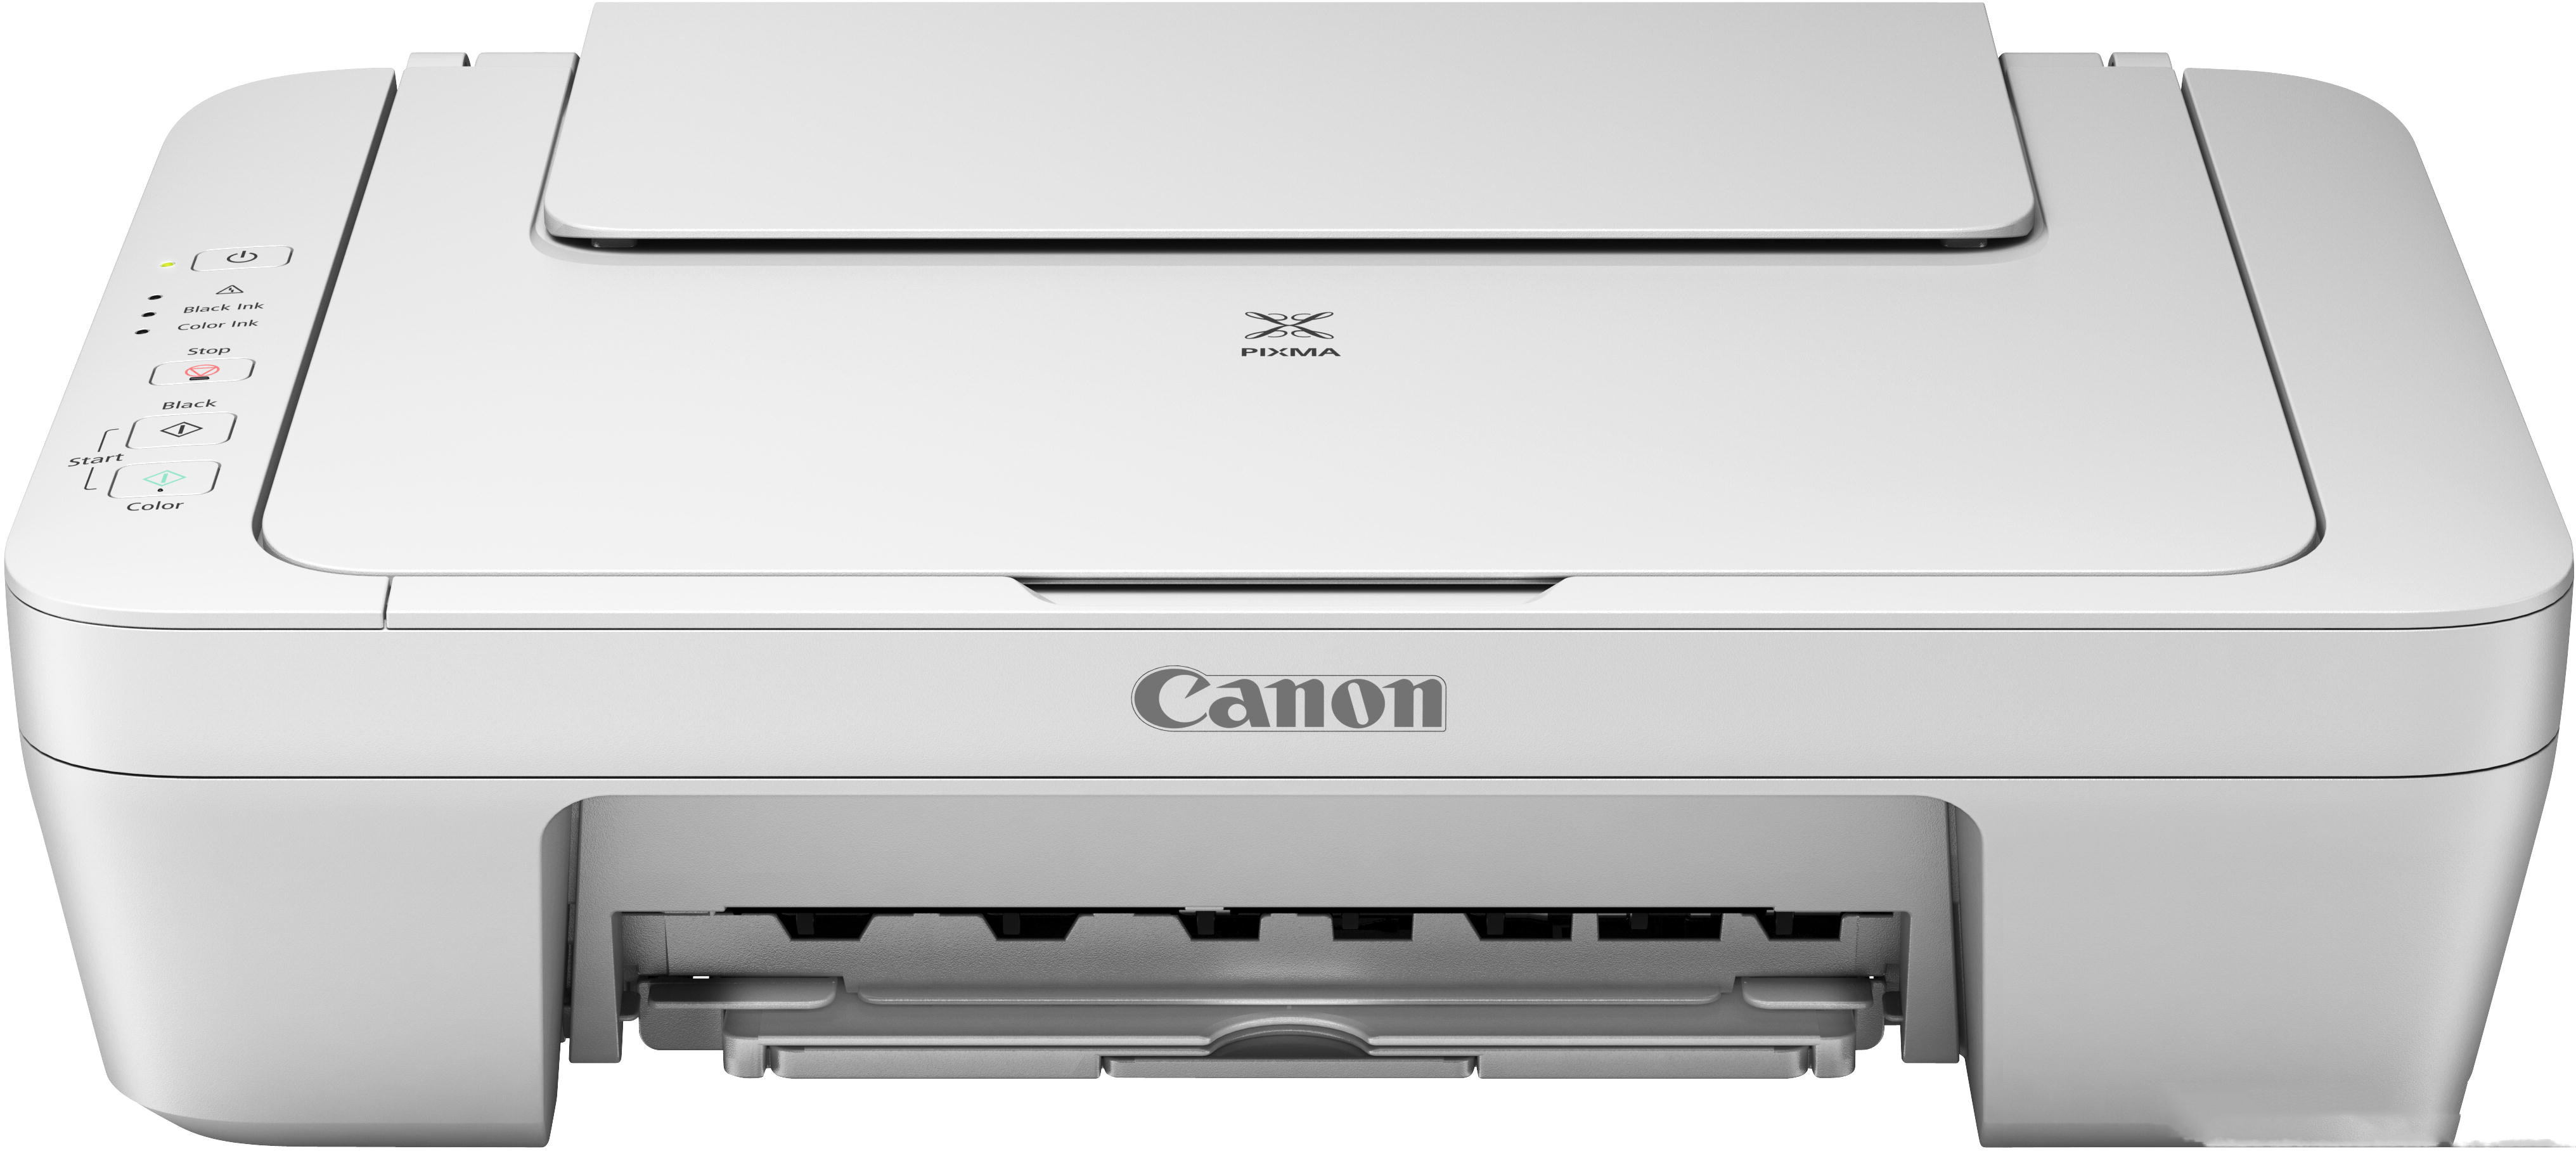 Принтер Canon PIXMA 2440